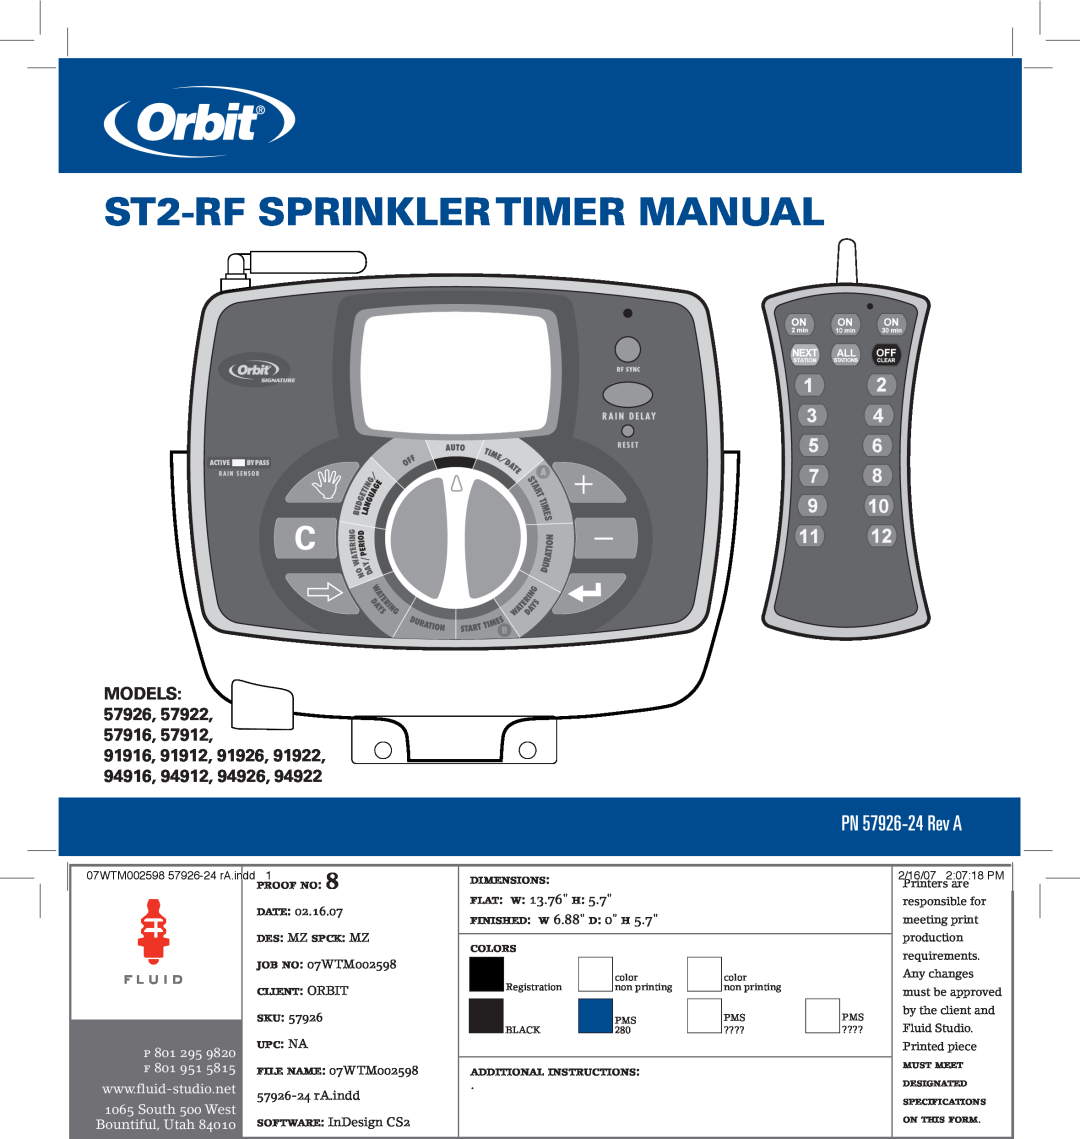 Orbit Manufacturing p 801 295 9820 ST2-RFSPRINKLERTIMER MANUAL, PN 57926-24Rev A, Models, 91916, 91912, Date, Proof No 